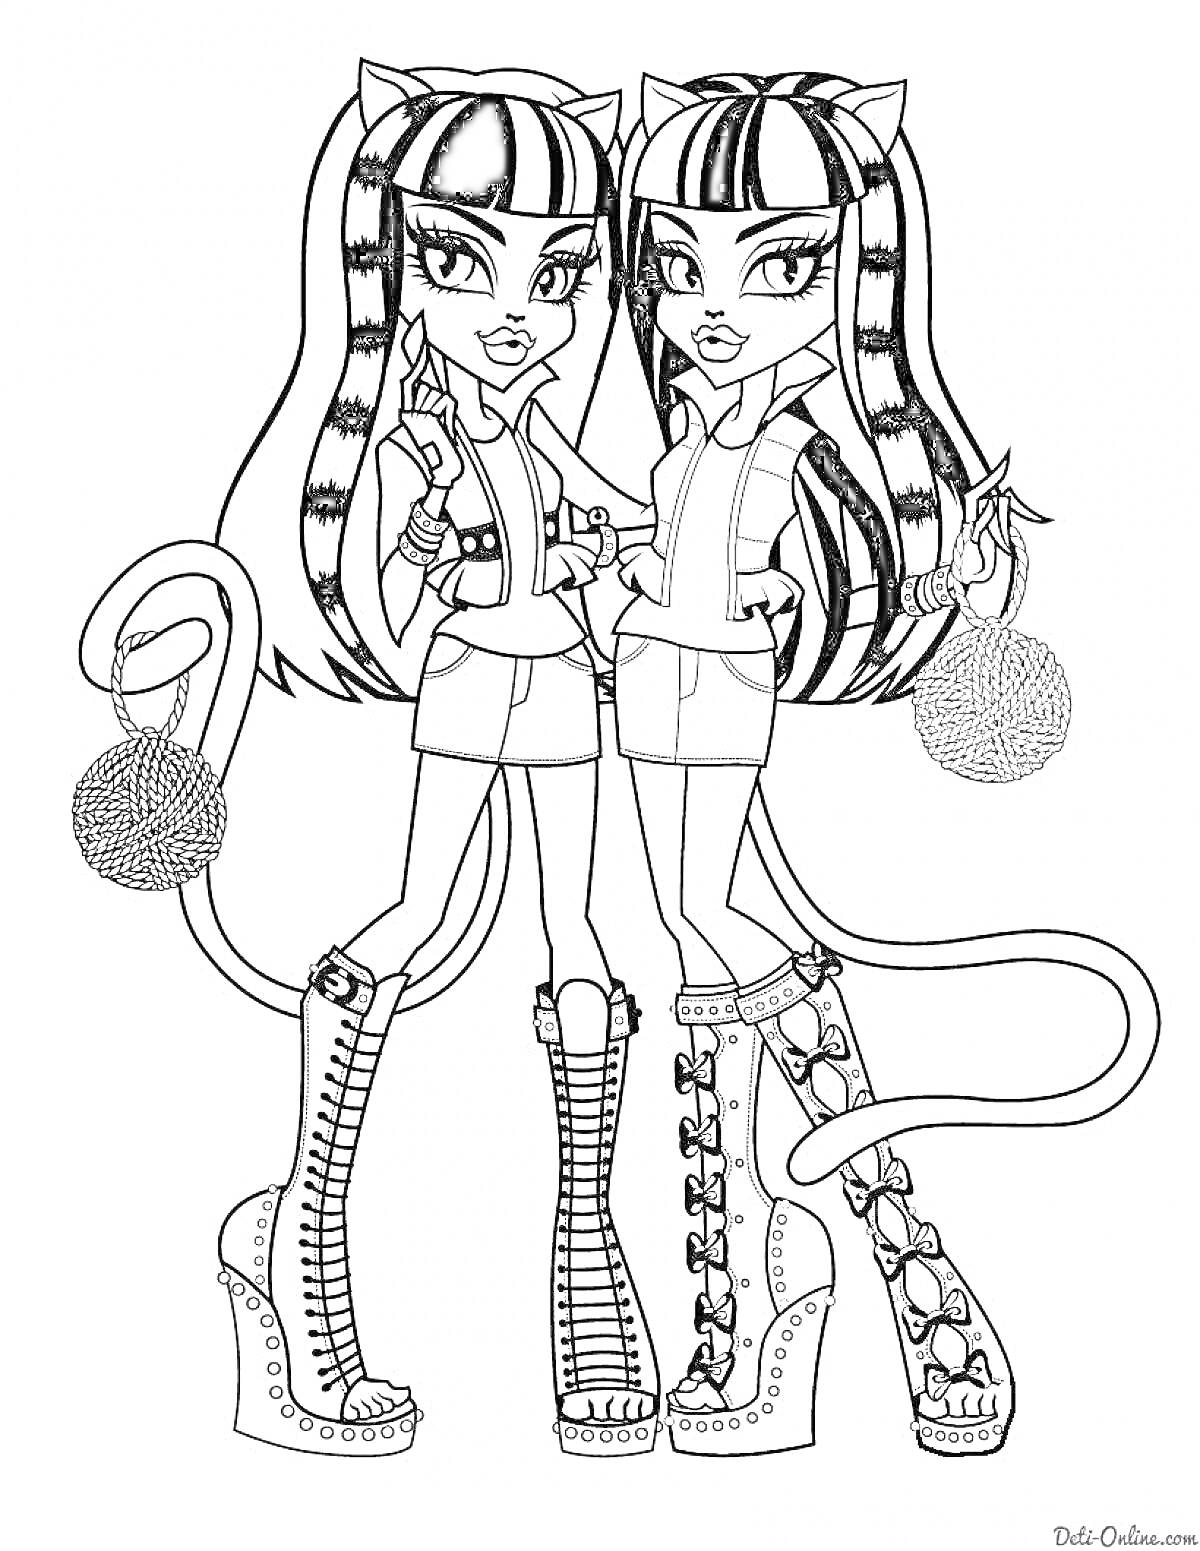 Раскраска Две девушки Монстер Хай-близнецы в обуви на платформе с мячиками для кошек и хвостами